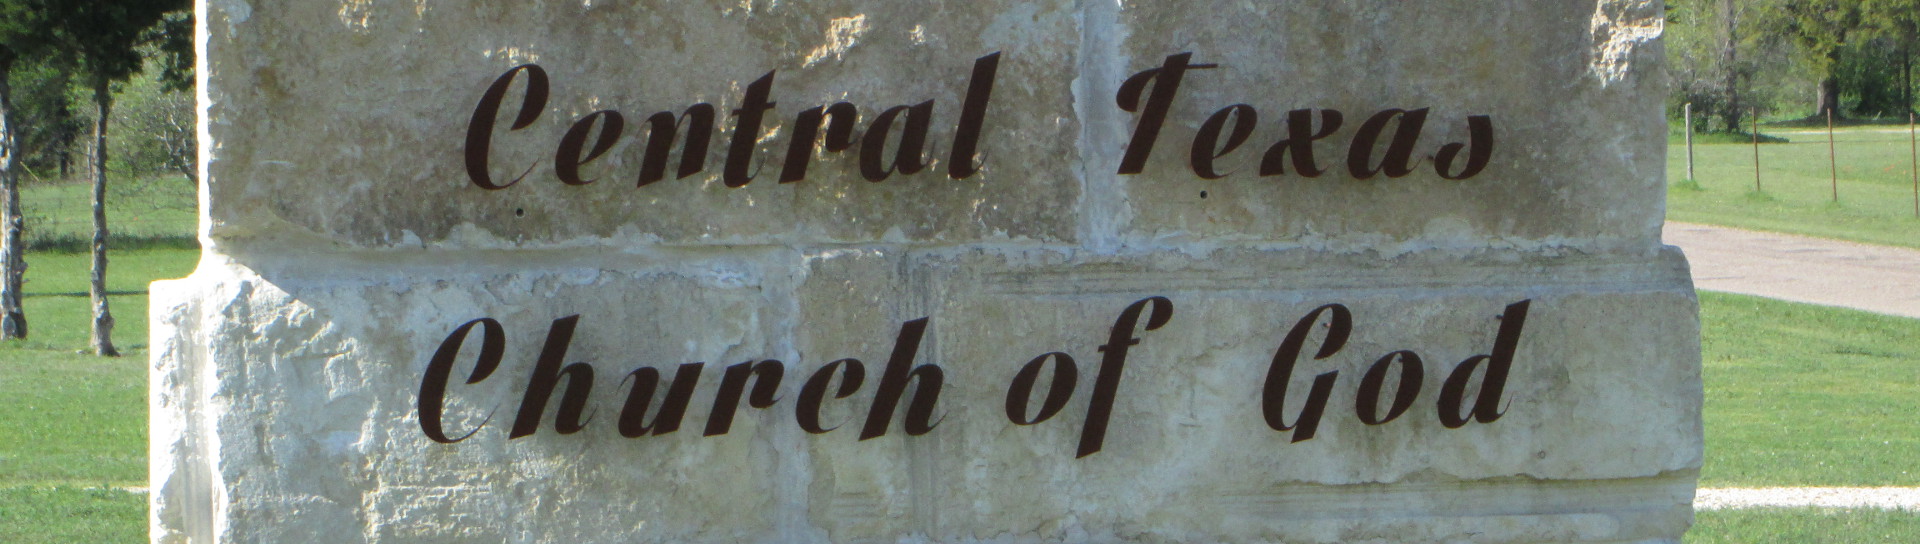 Central Texas Church of God